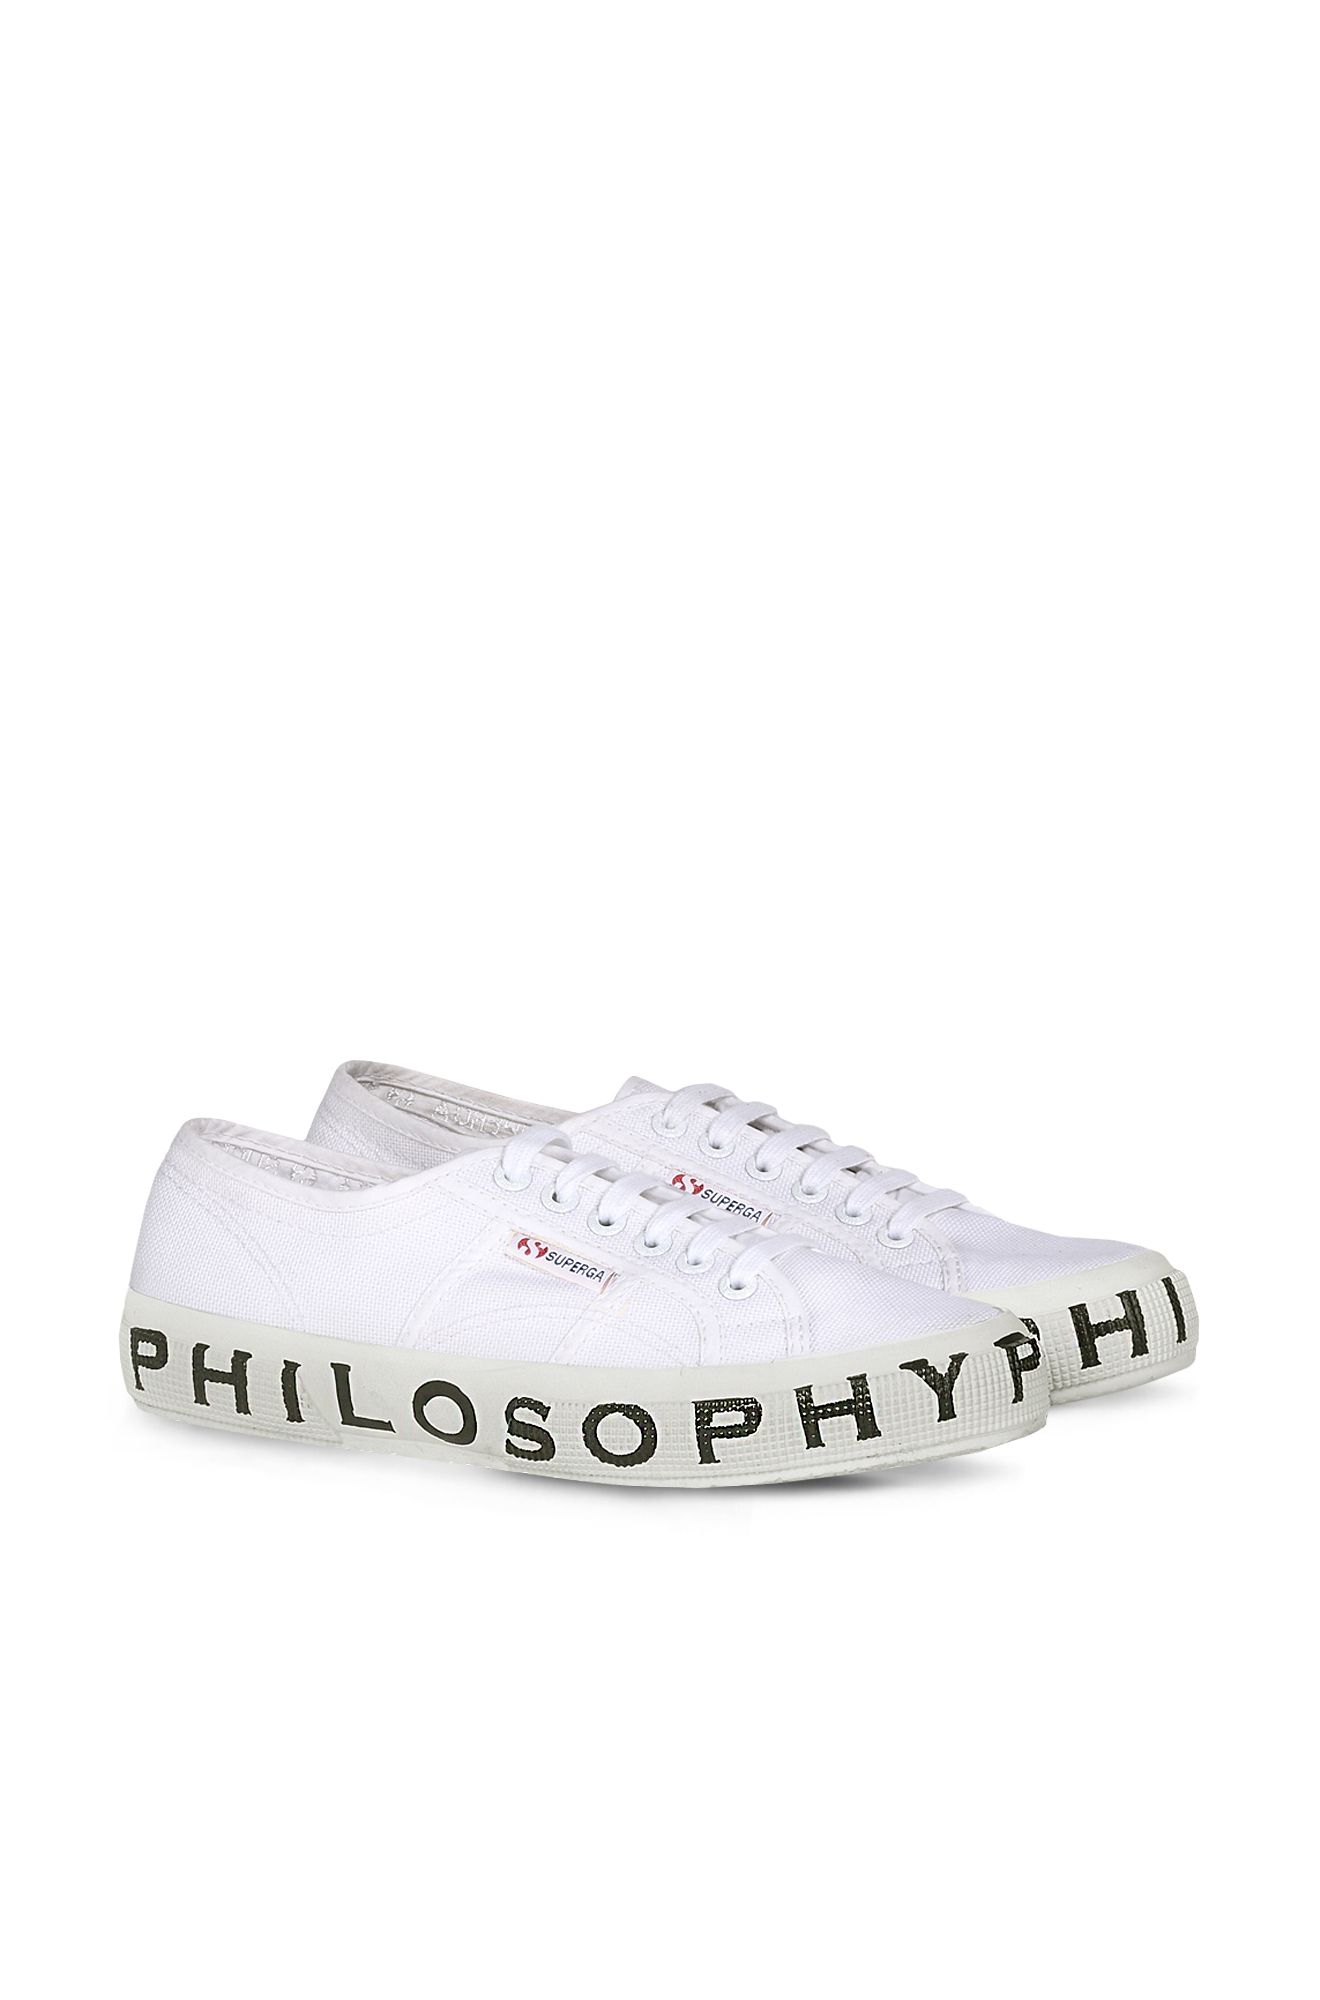 scarpe philosophy superga